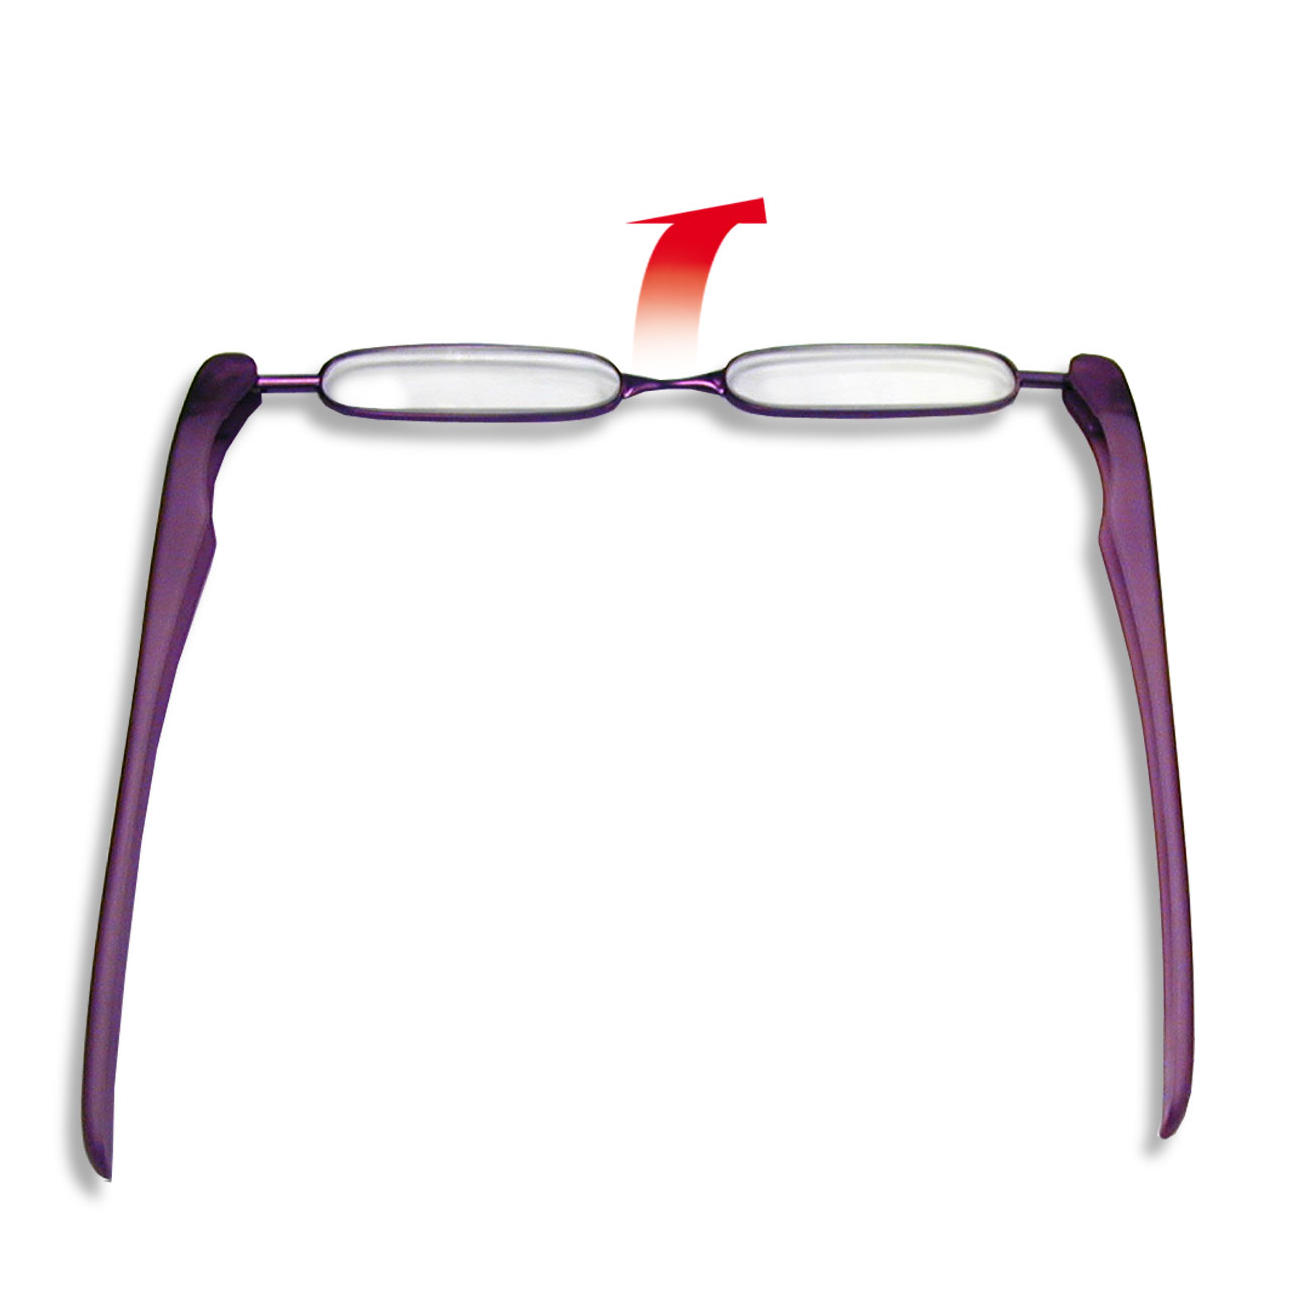 Manuscript Hijgend Slechte factor Opvouwbare leesbril | 3 Jahre Garantie | Pro-Idee